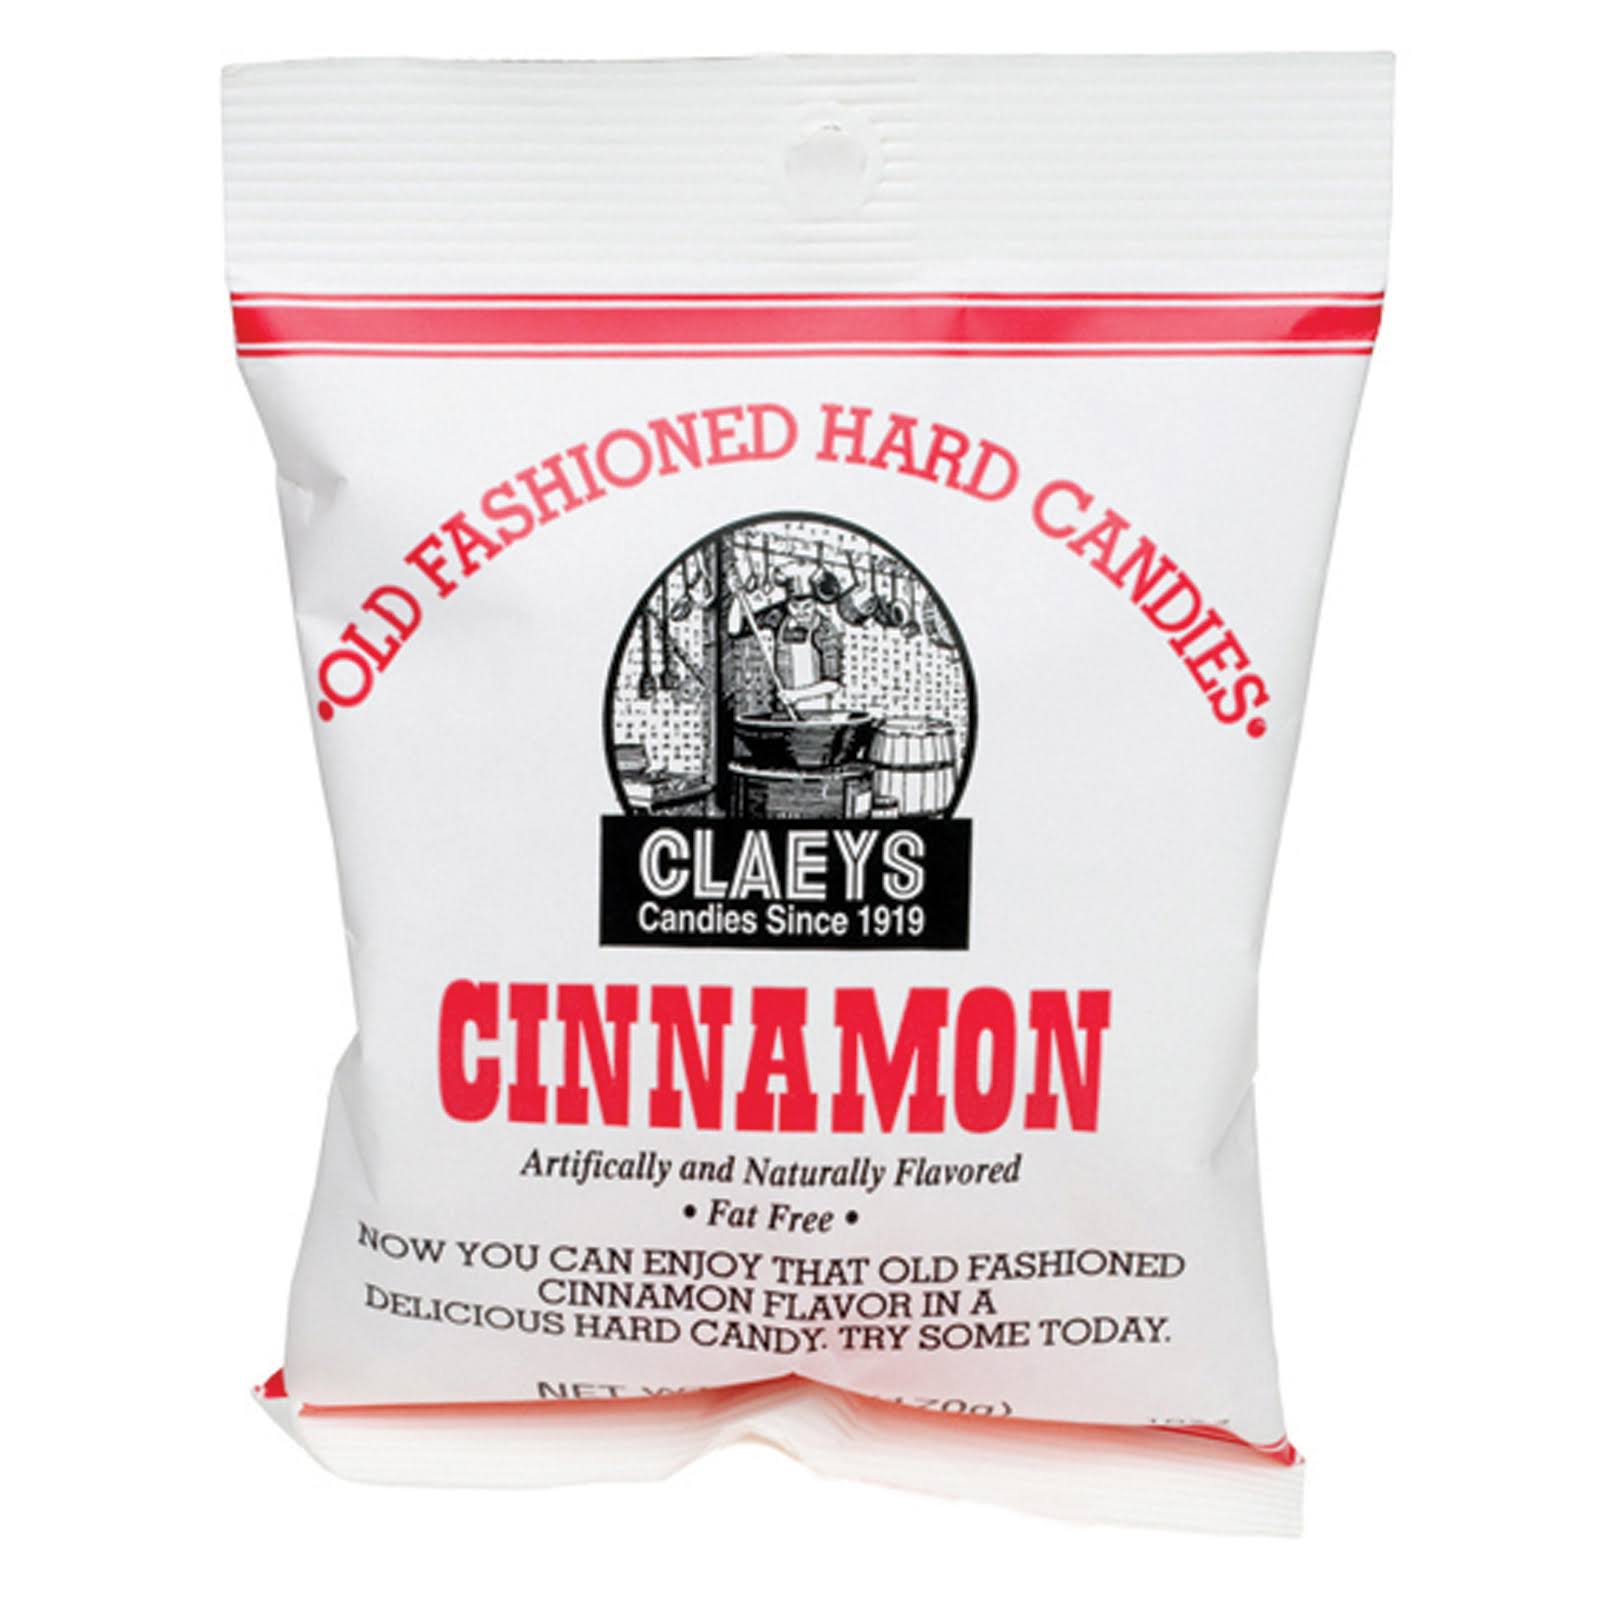 Claeys Old Fashioned Hard Candies - 6oz Bag, Cinnamon